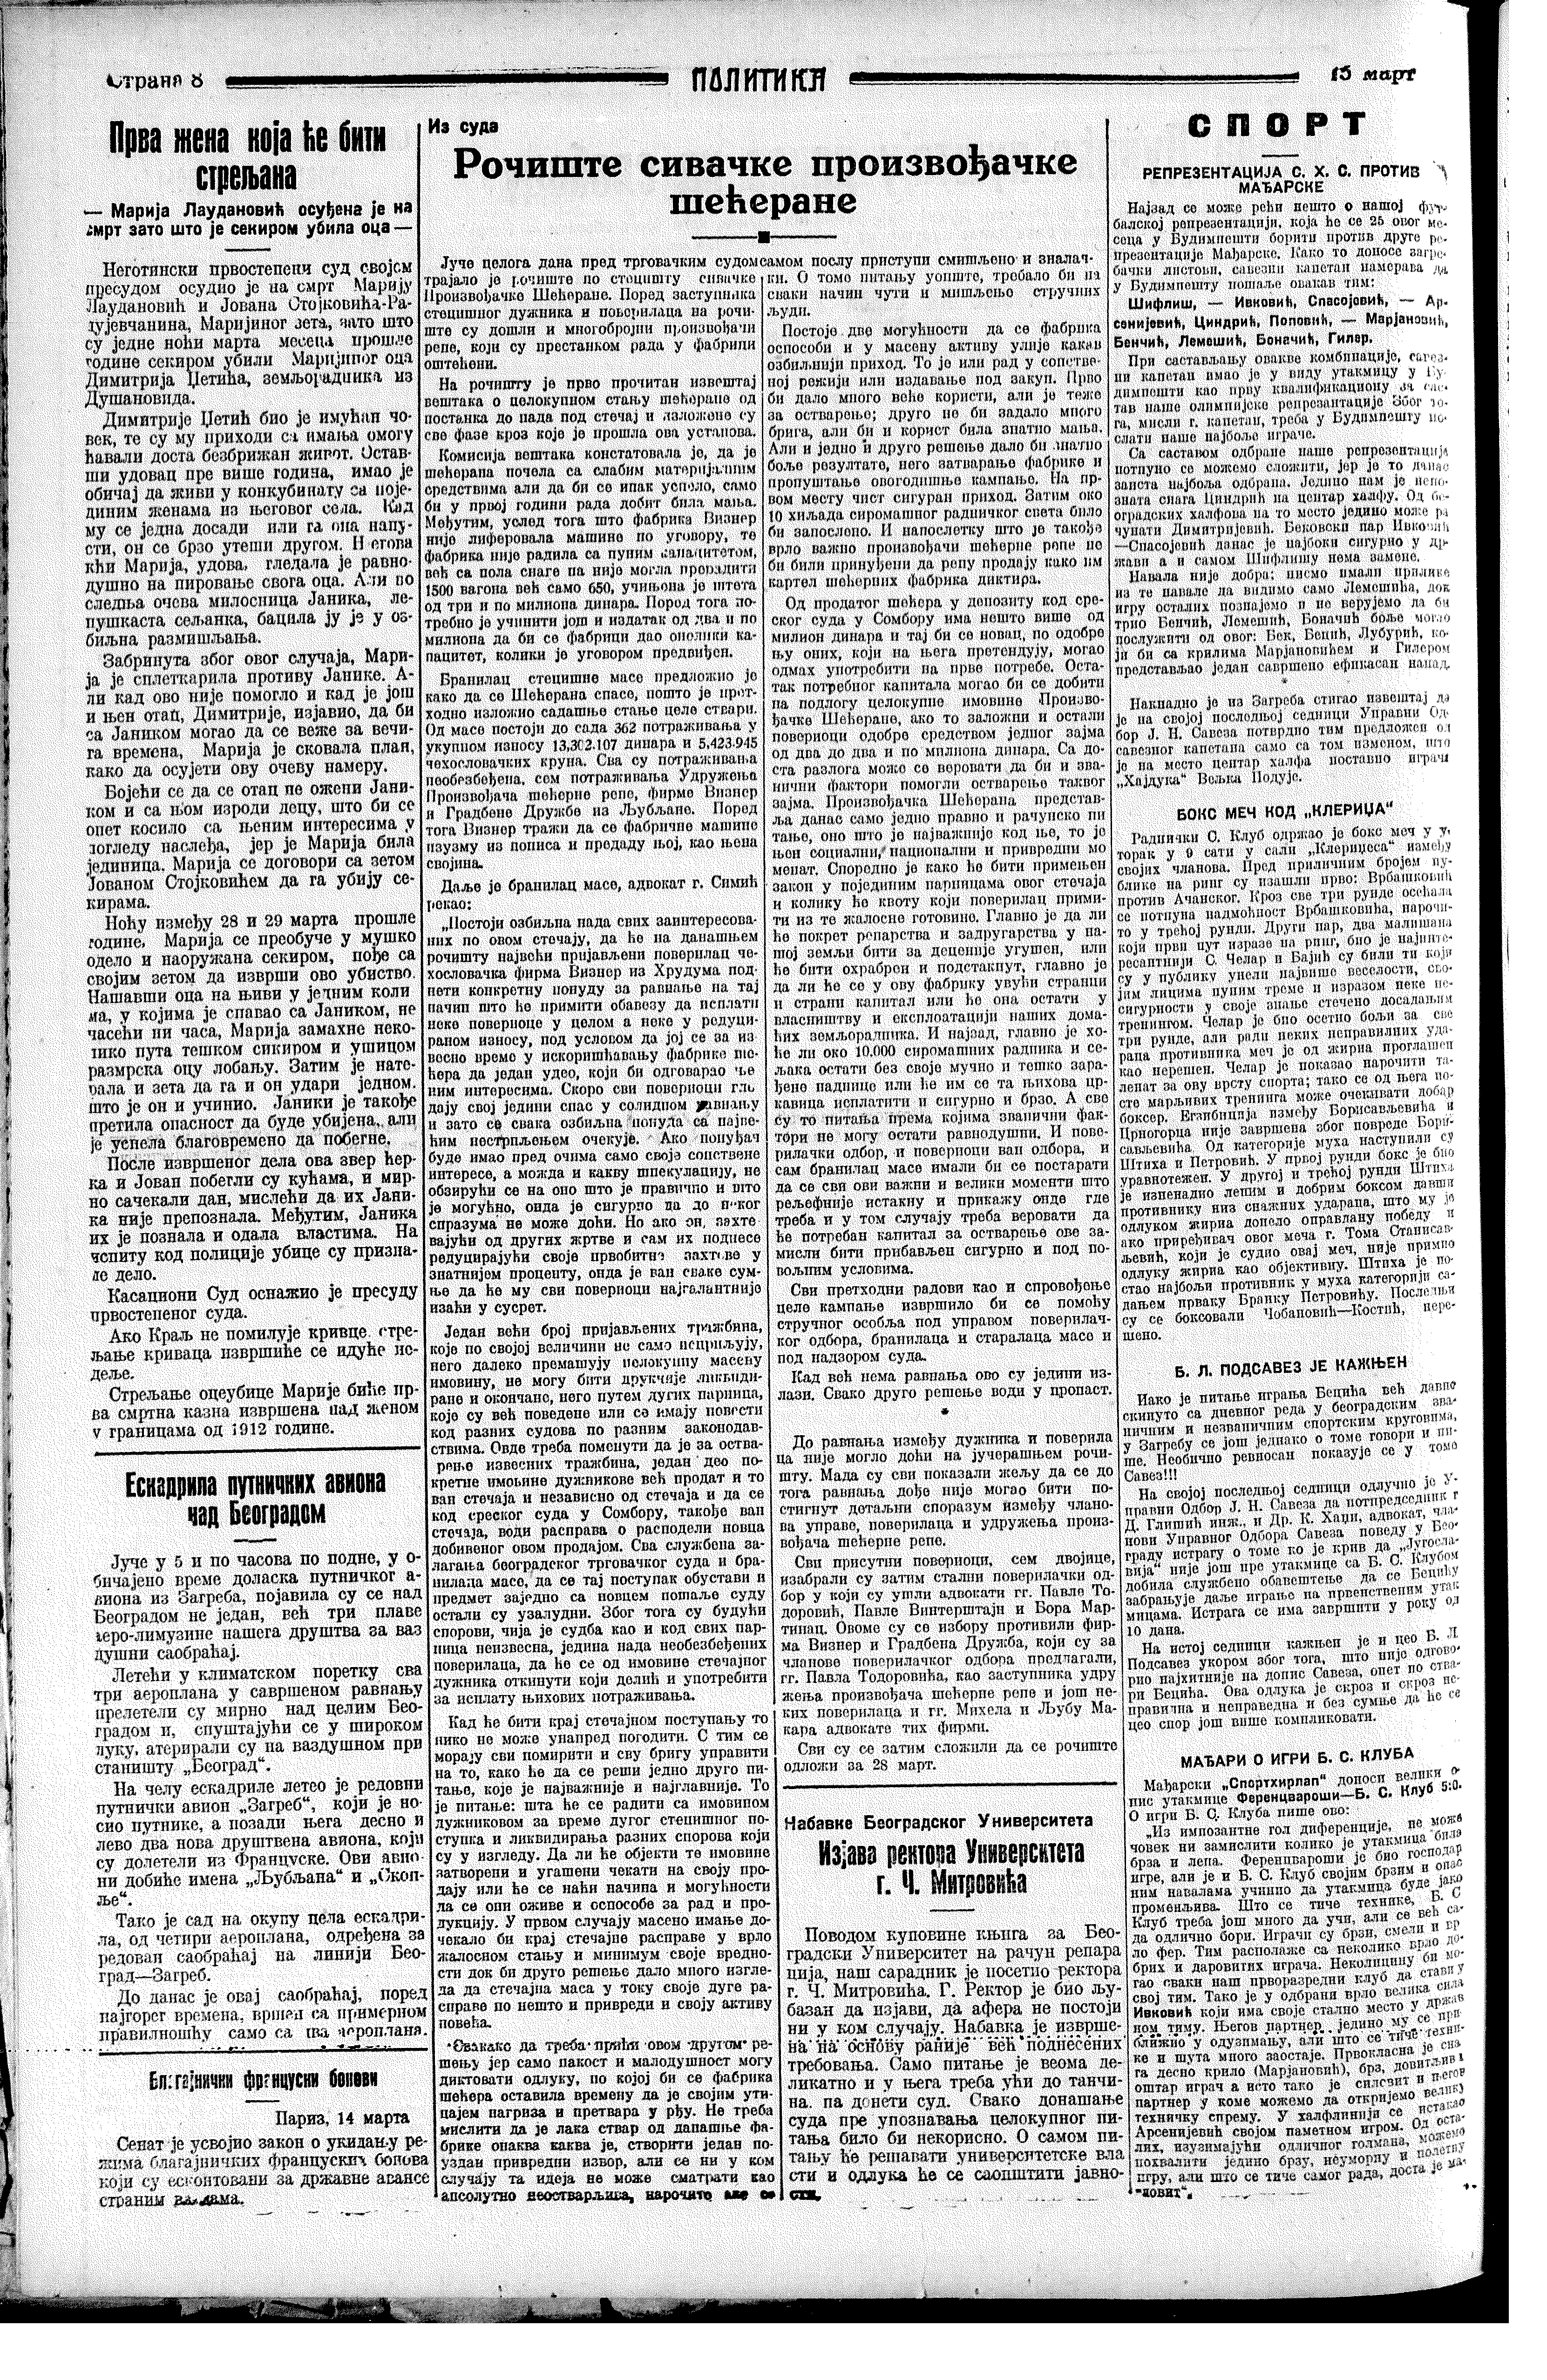 Prva žena koja će biti streljana, Politika, 15.03.1928.